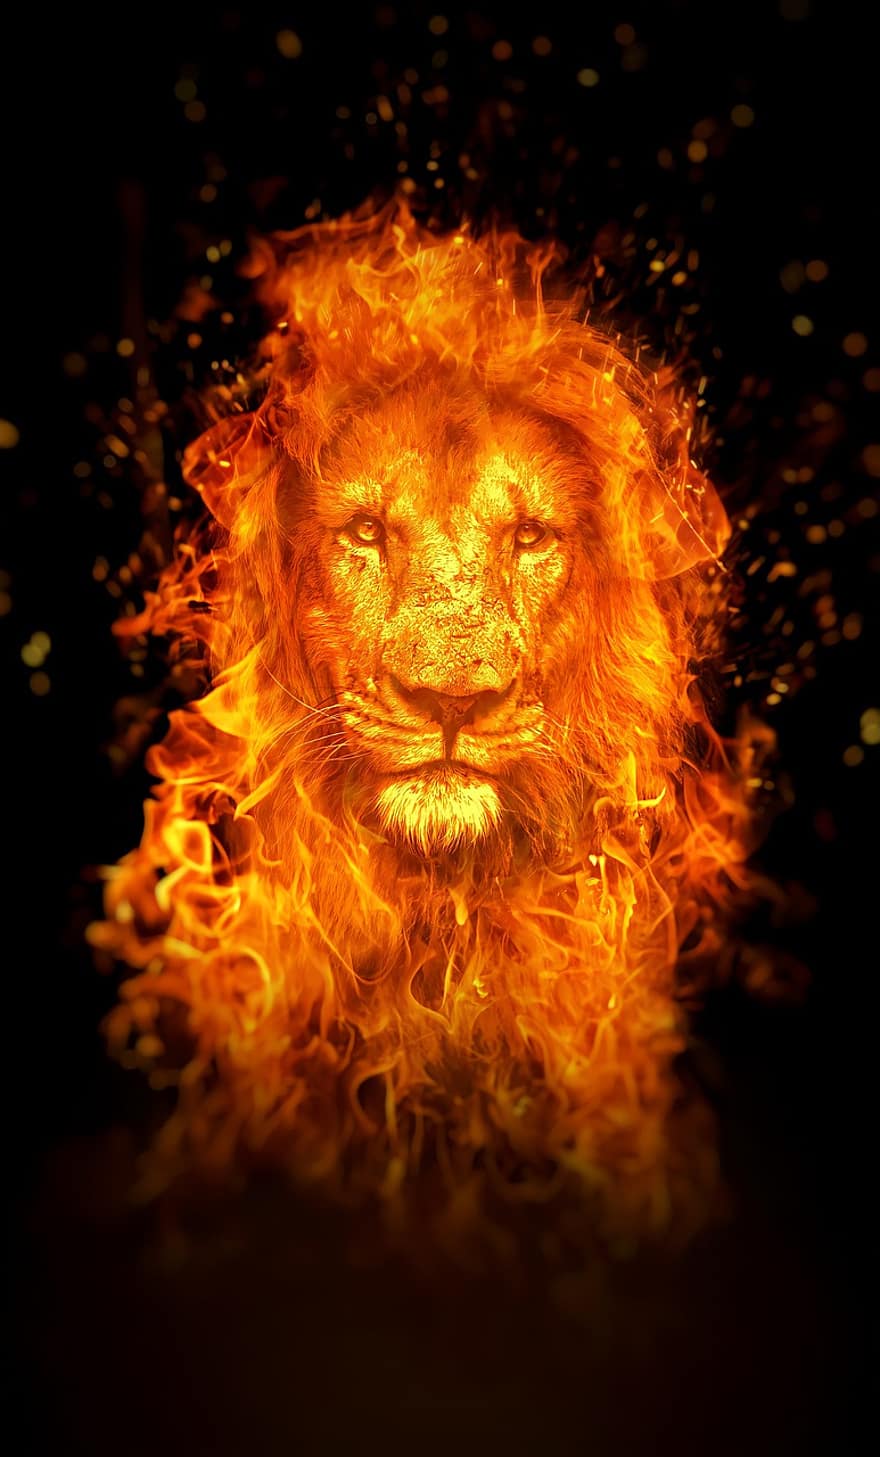 leão, fogo, papel de parede, manipulação fotográfica, edição de fotos, surreal, arte digital, chama, Leão Flamejante, Animal flamejante